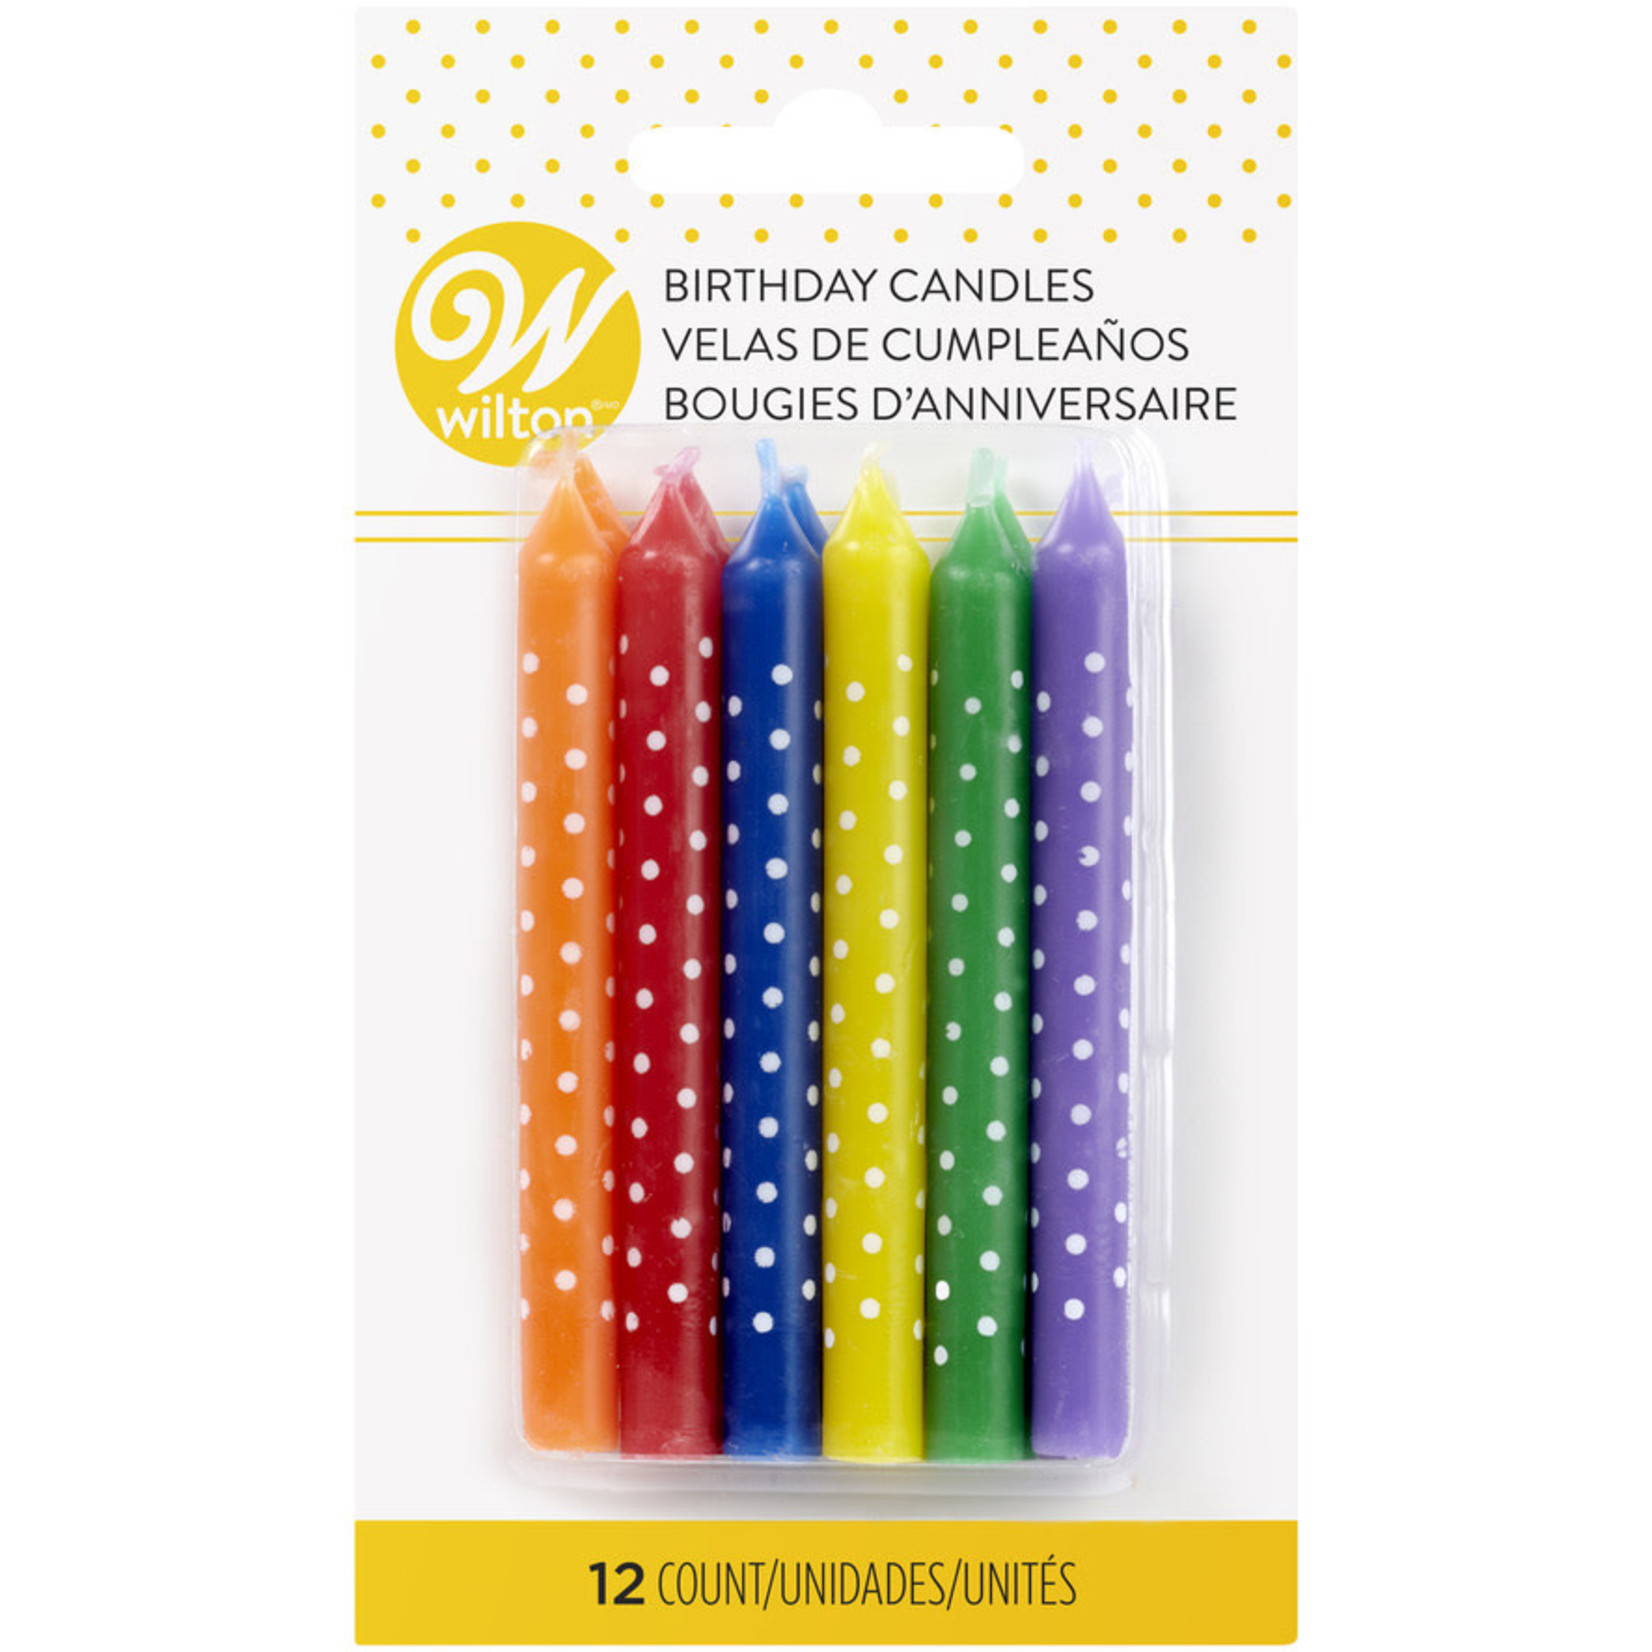 WILTON WILTON Birthday Candles Multi-Coloured with White Dots DNR